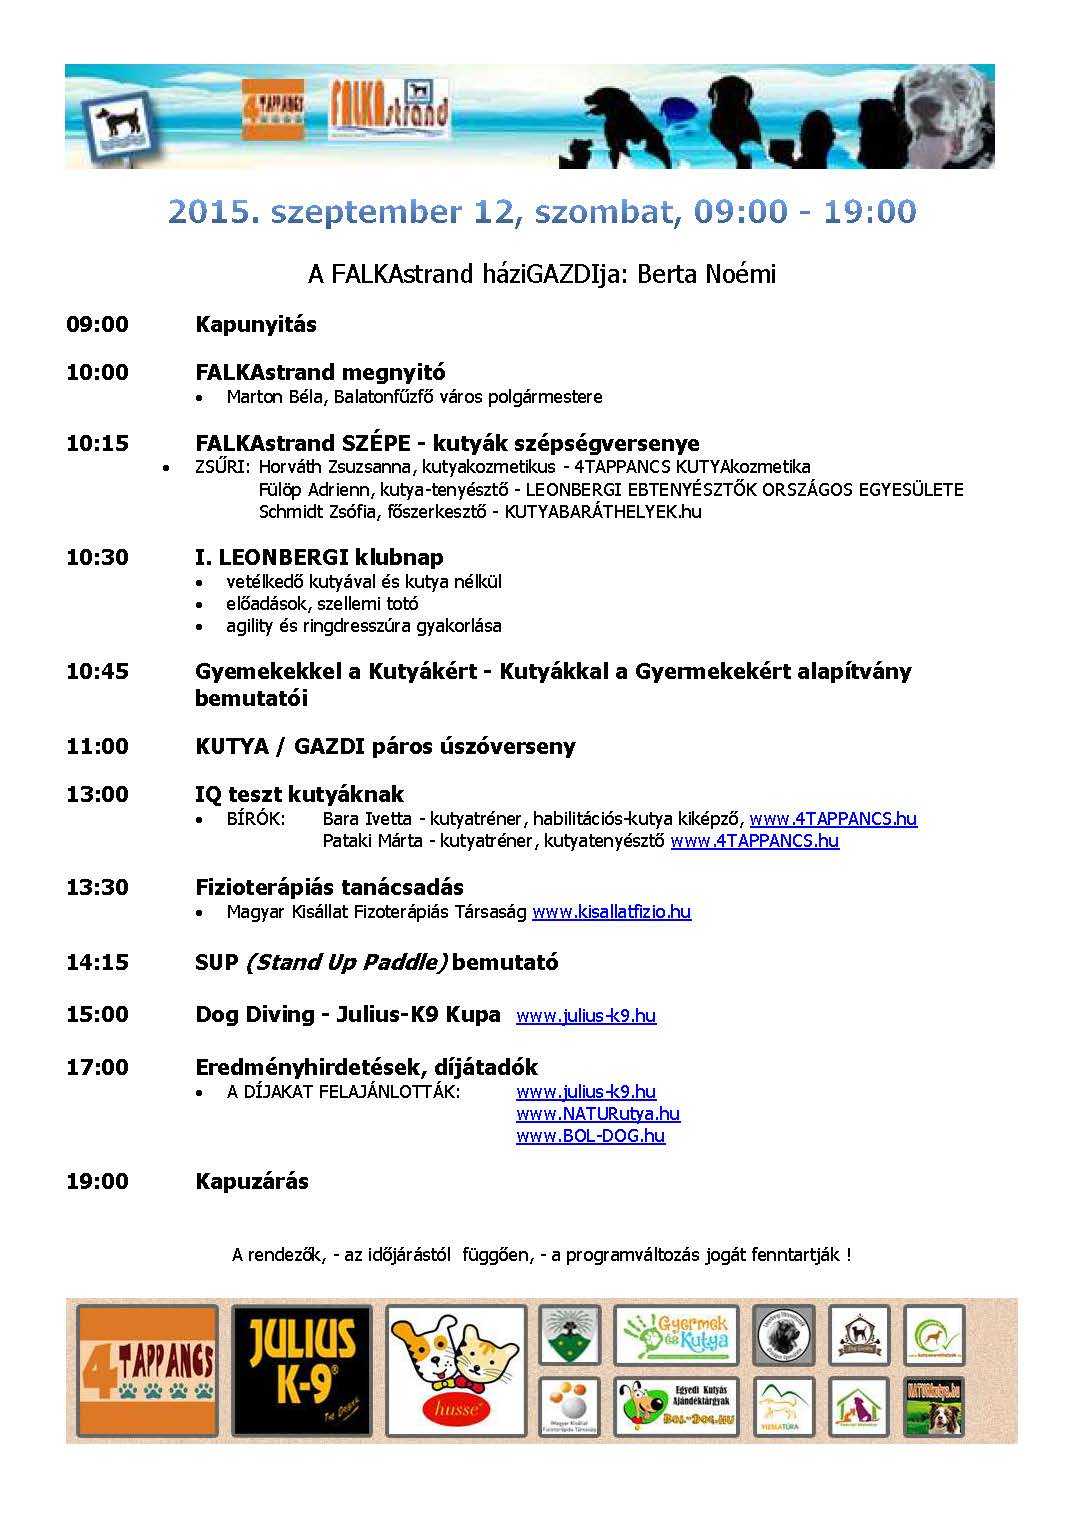 FALKAsrand 2015 részletes programja